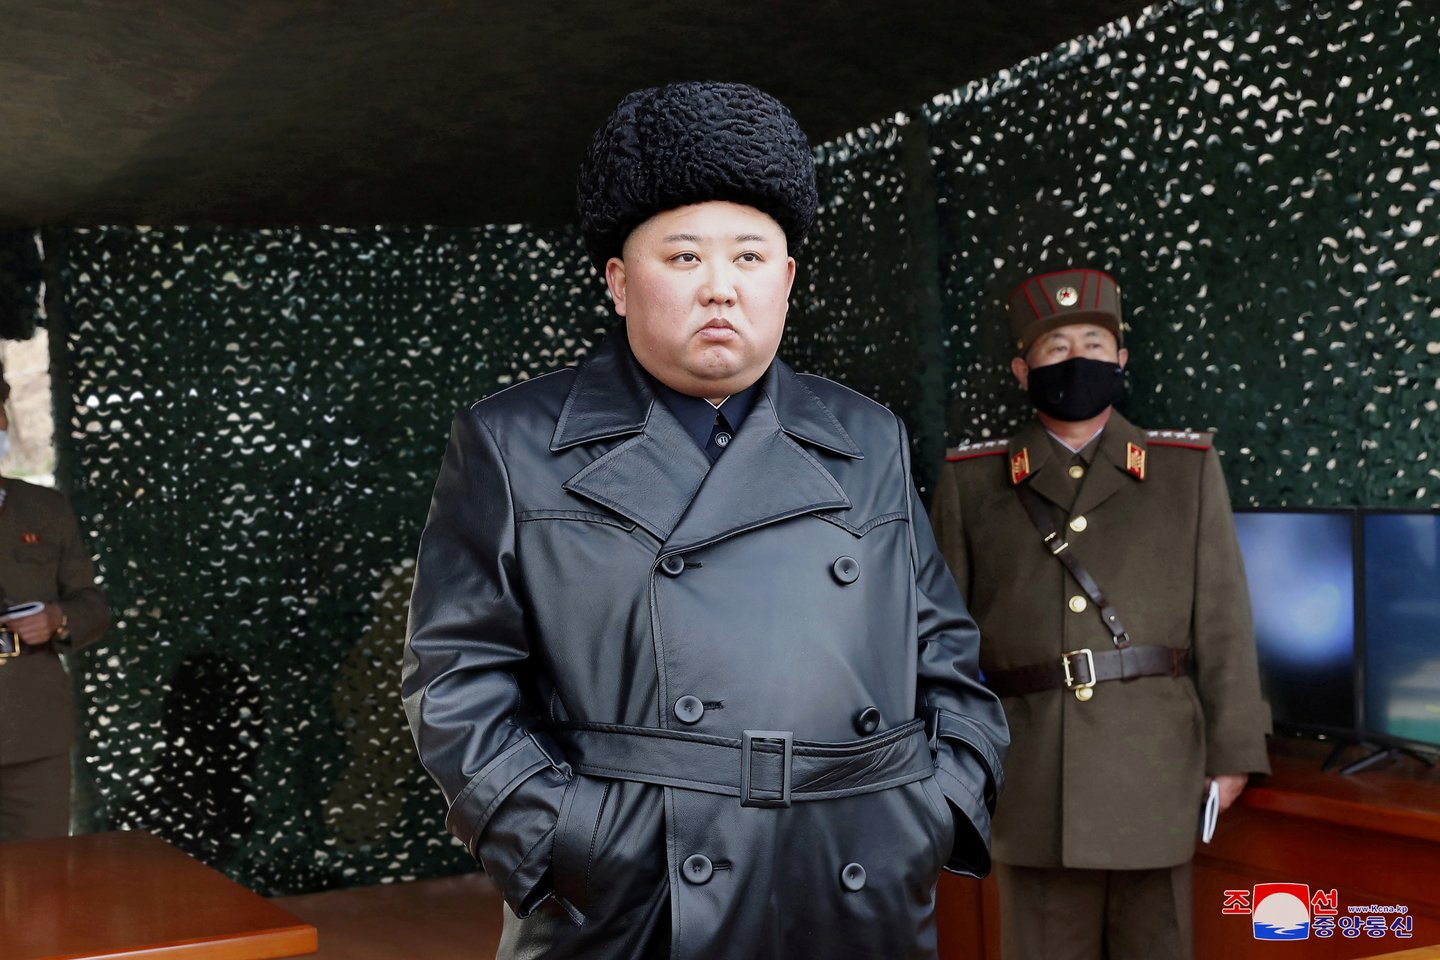 Sklandant įvairiems gandams apie Šiaurės Korėjos lyderio sveikatą, Kim Jong Unui greičiausiai priklausantis traukinys buvo pastebėtas pajūrio kurorte rytinėje šalies dalyje, parodė autoritetingos JAV svetainės „38 North“ palydovinės nuotraukos.<br>Reuters/Scanpix nuotr.